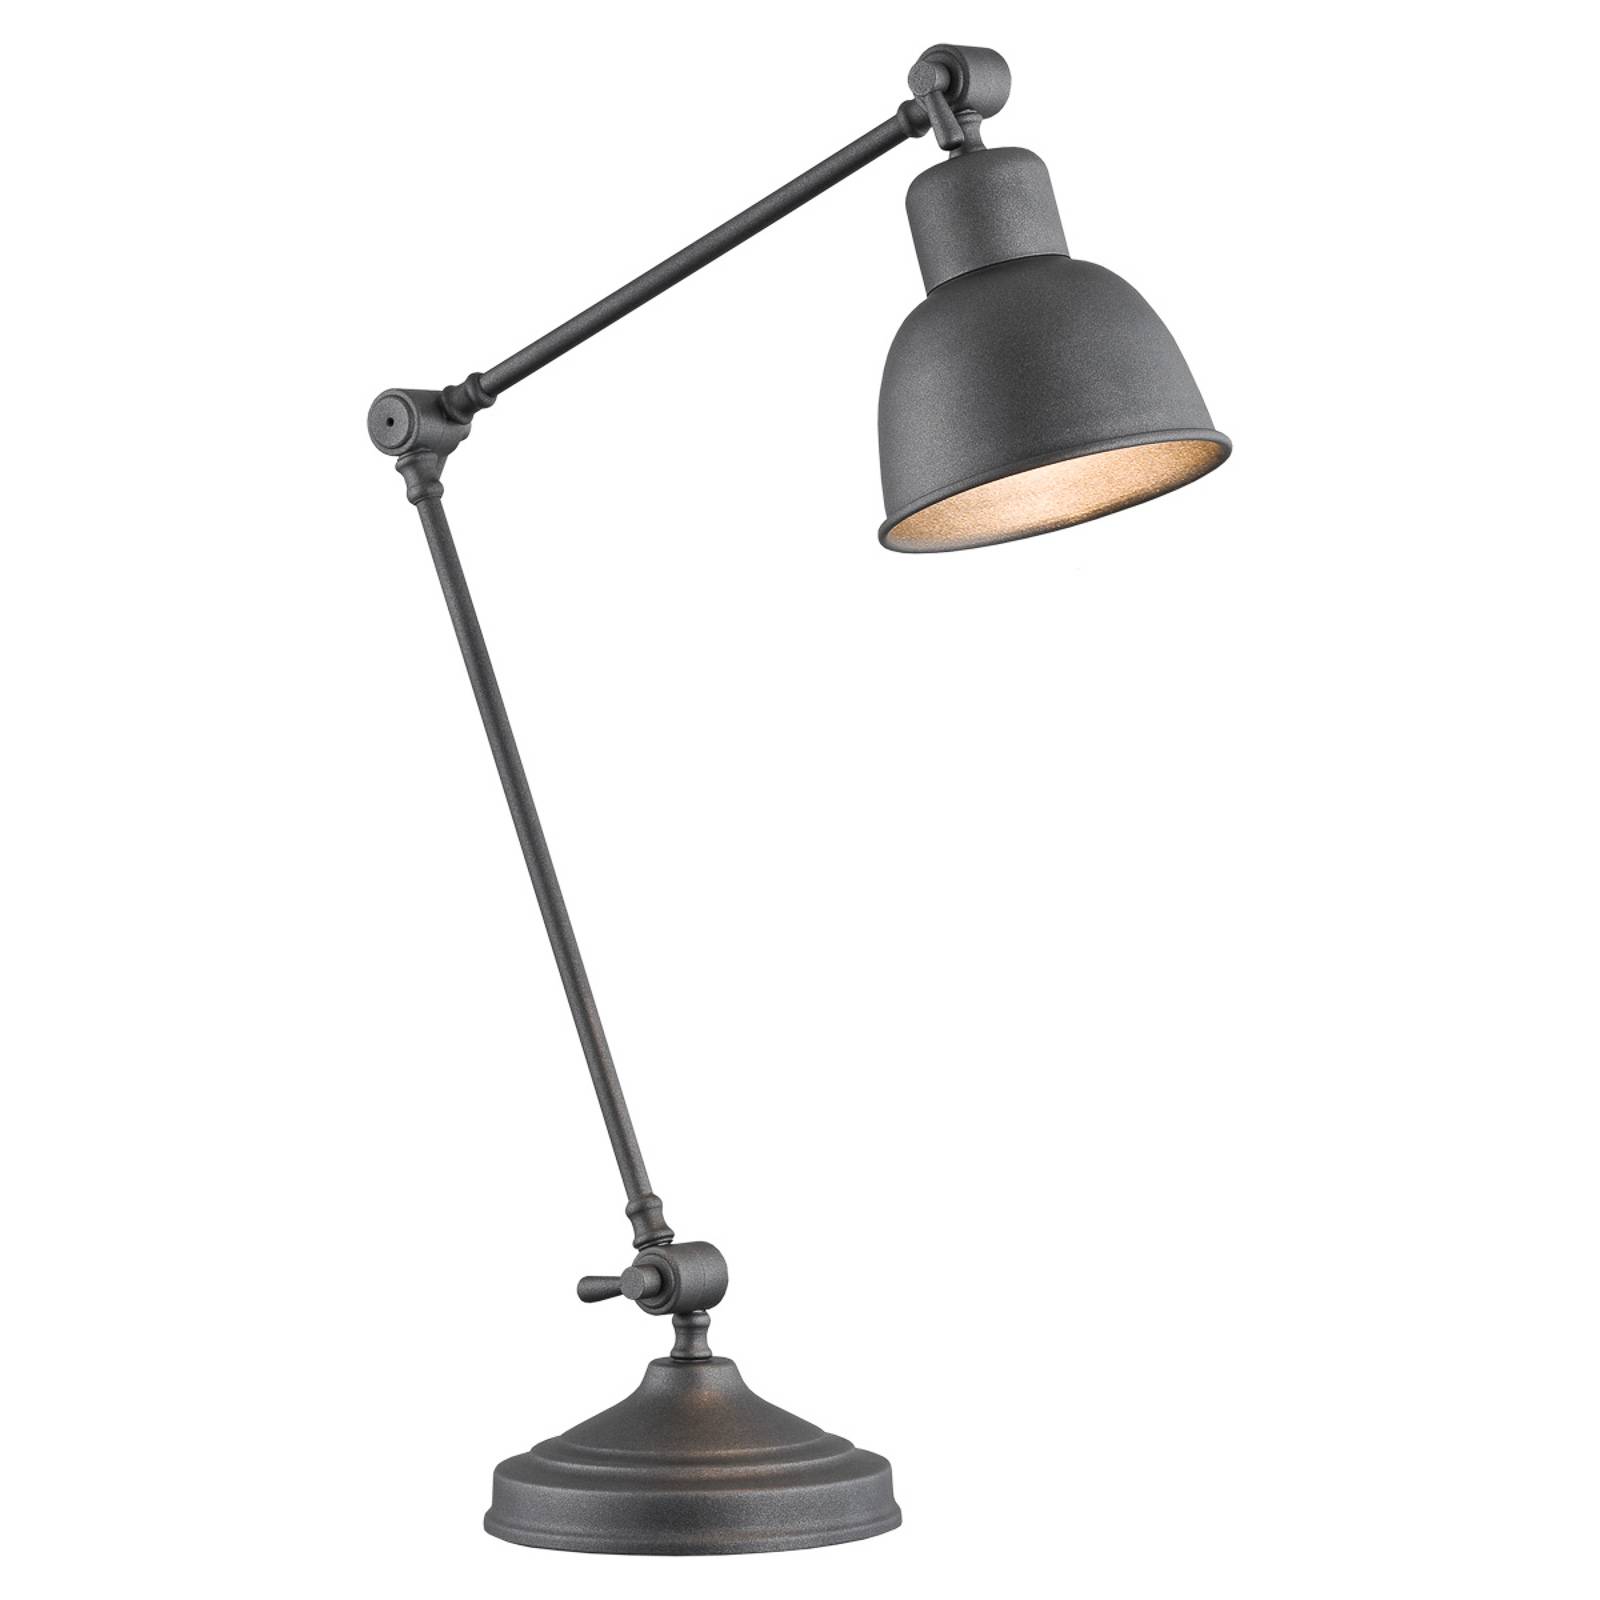 Stolná lampa Emoti, antracitová, výška 45 cm, nastaviteľná